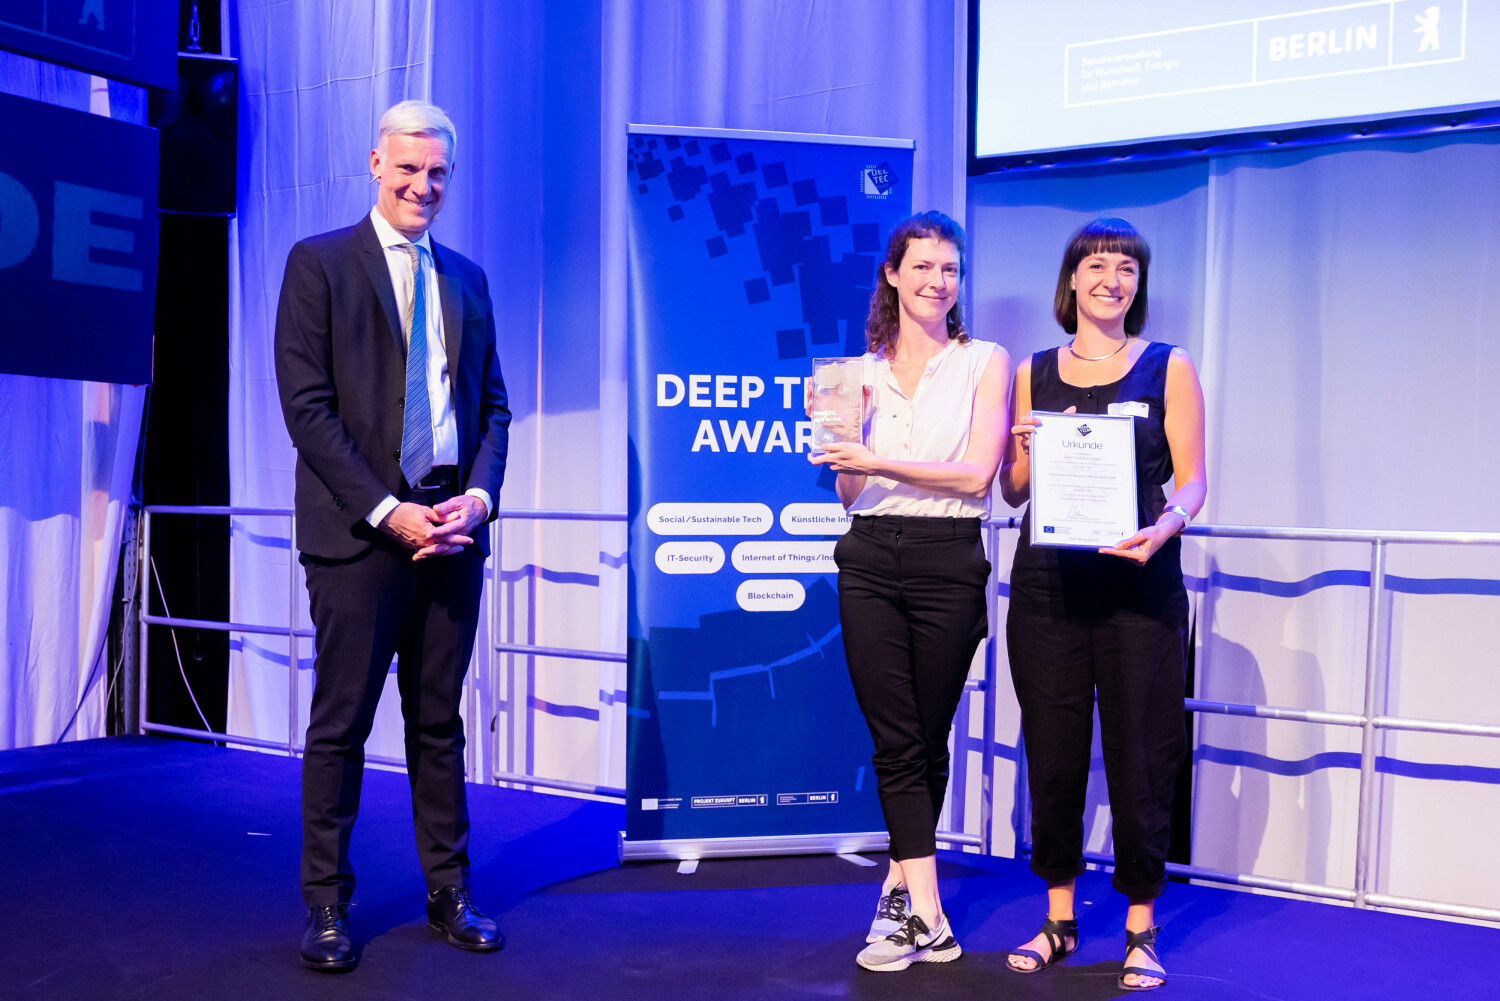 macht.sprache. sichert sich den Deep Tech Award in der Kategorie Social / Sustainable Tech